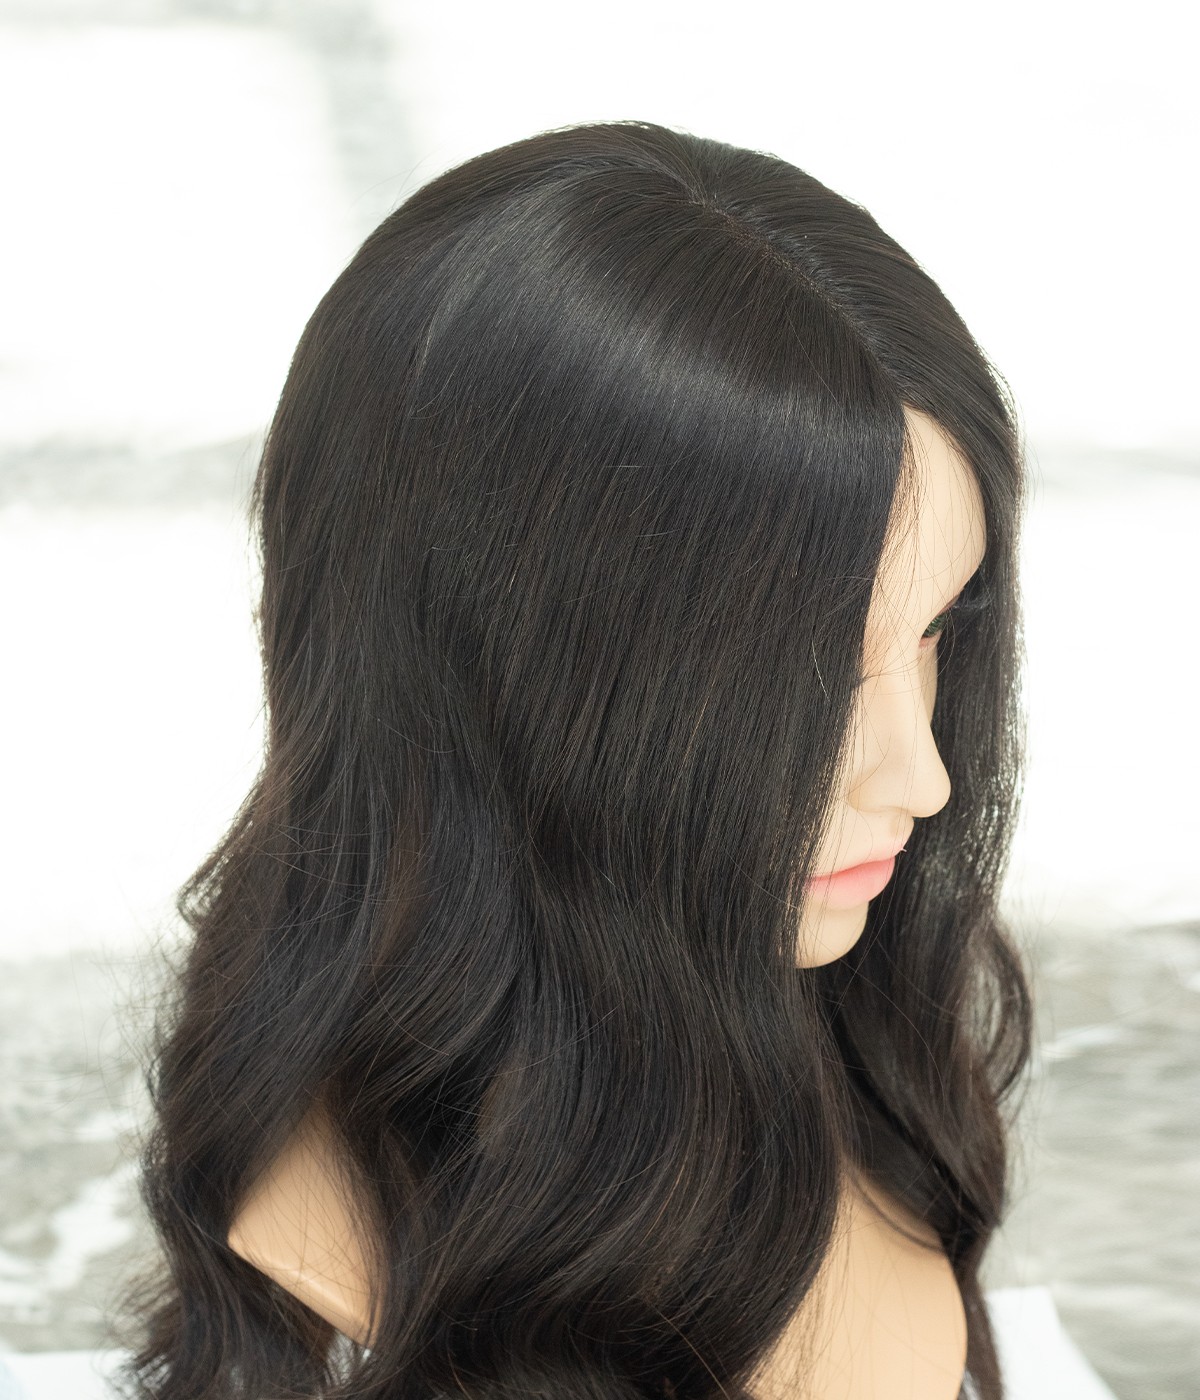 6"x7" Full Silk Base European Human Hair Topper | 100% Handtied | European Hair Topper 